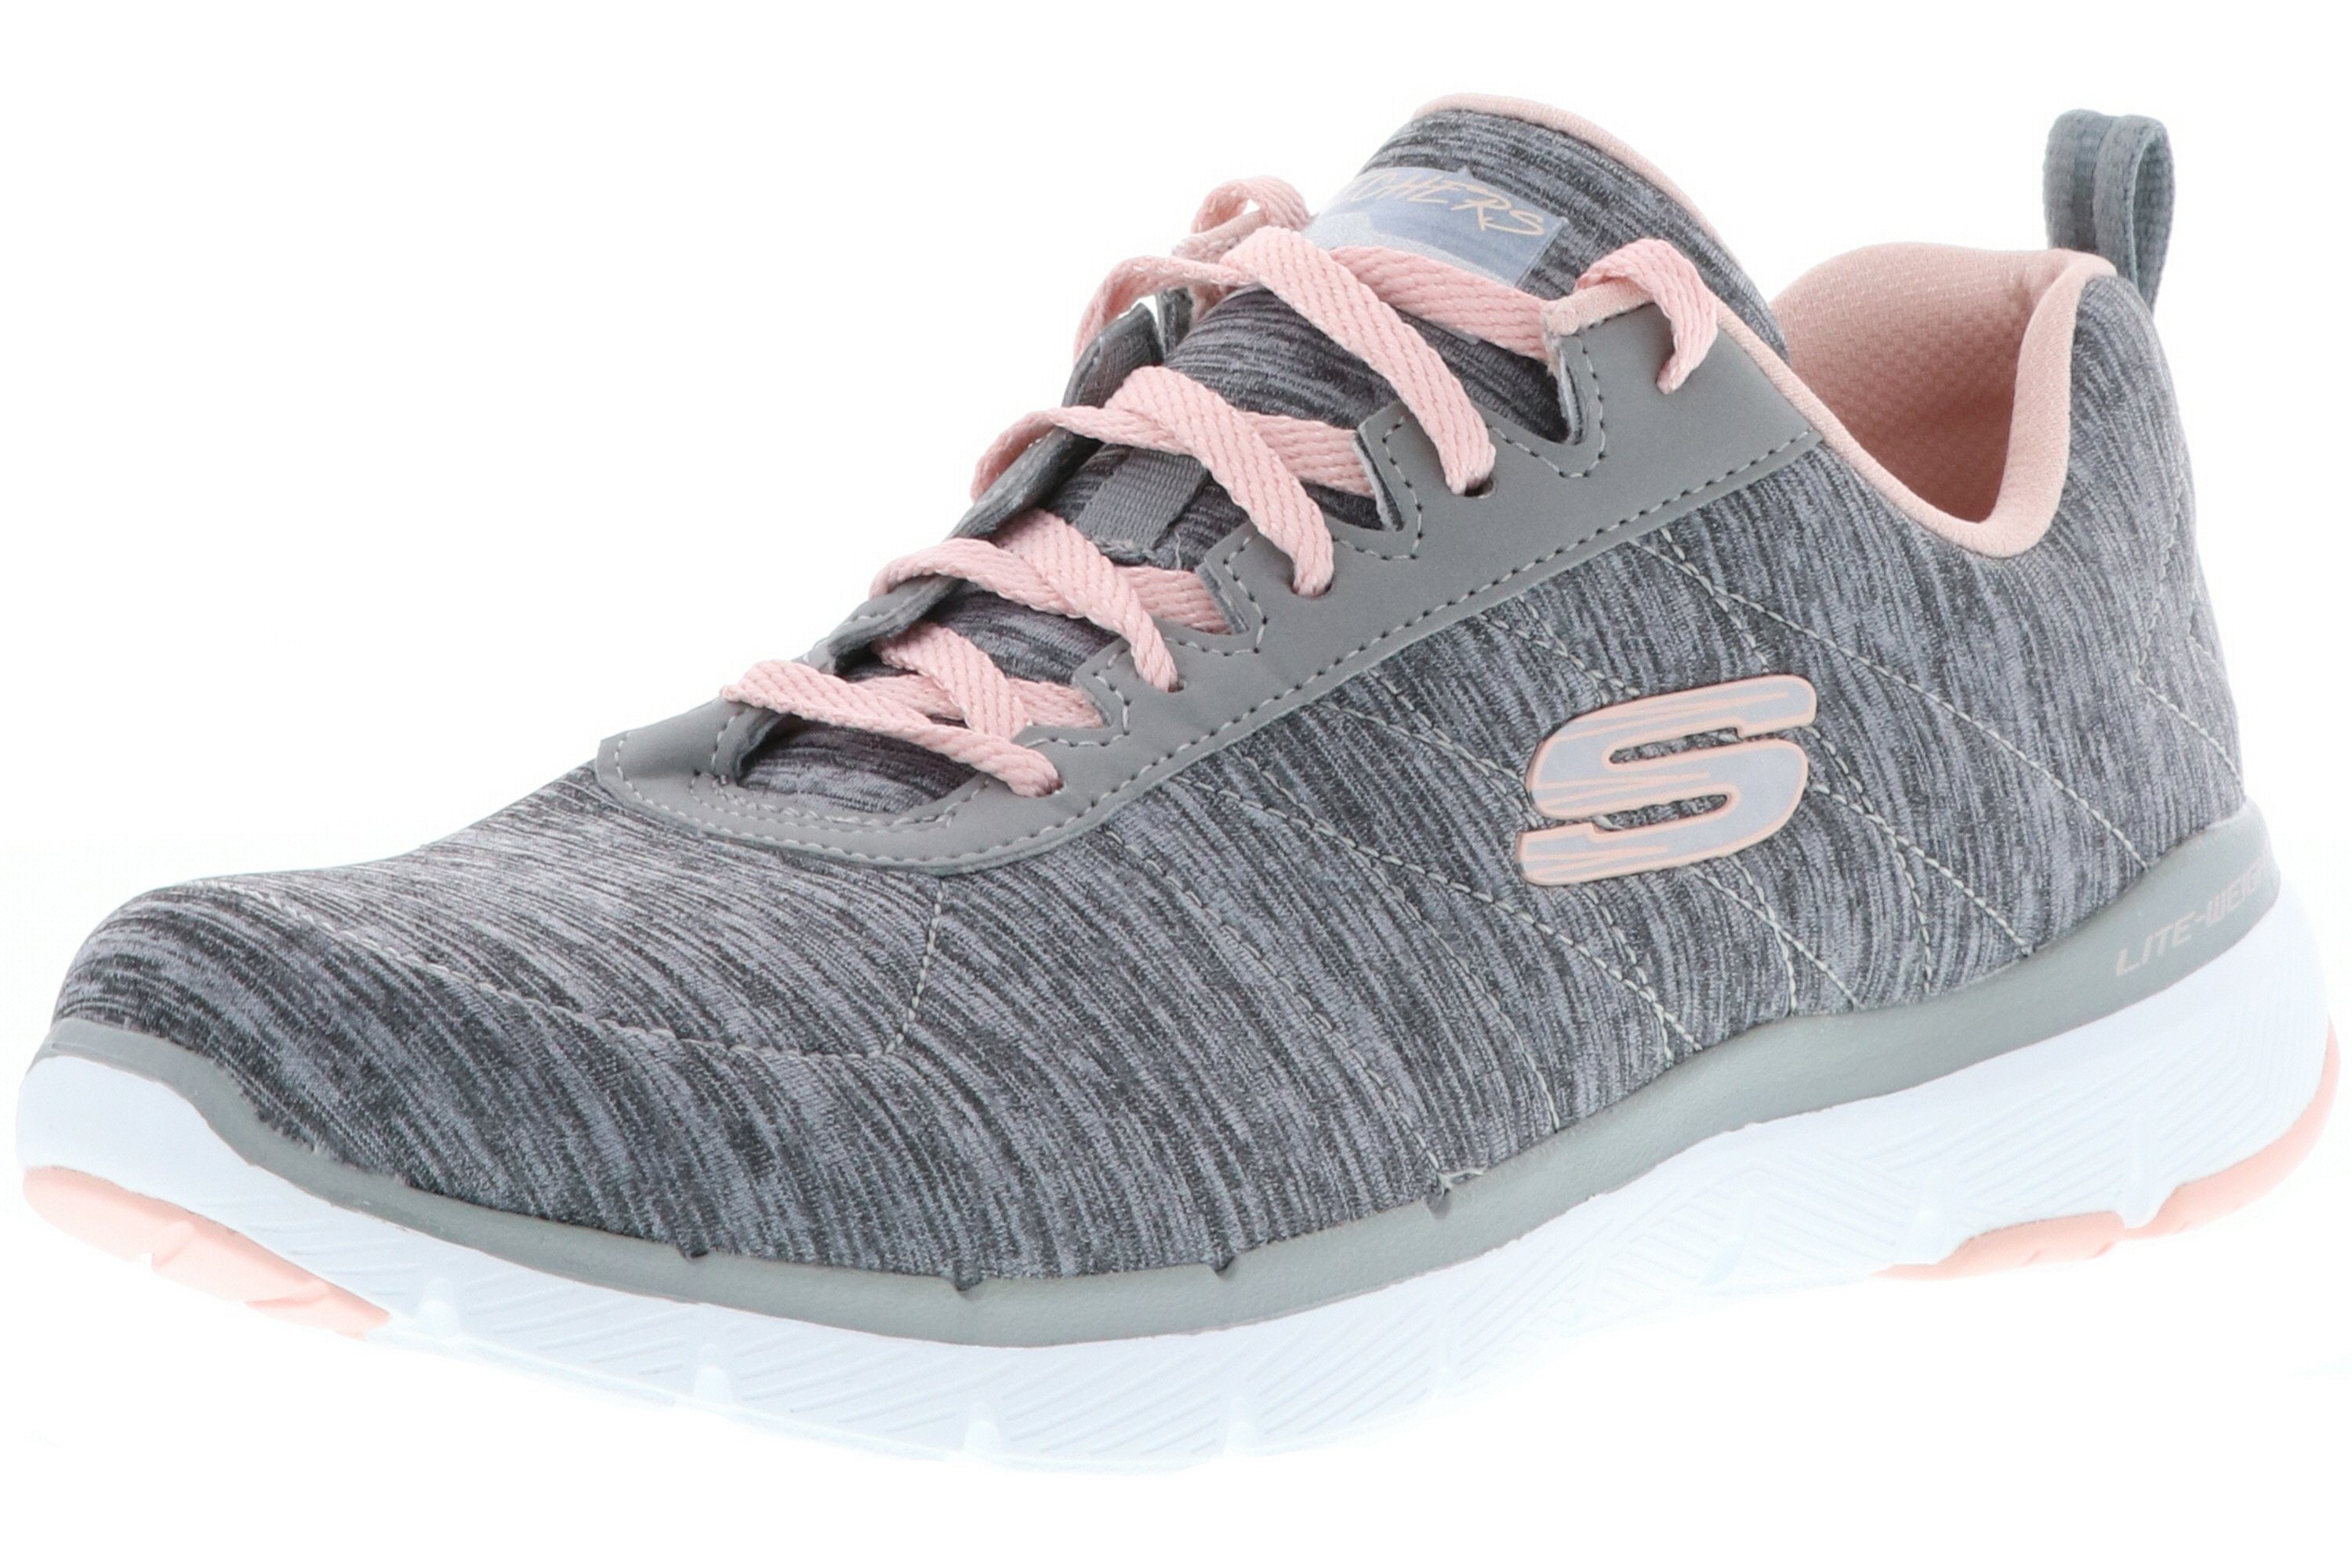 Skechers 13067/GYLP Flex Appeal 3.0-Insiders Gray/Light Pink Sneaker hellgrau / altrosa